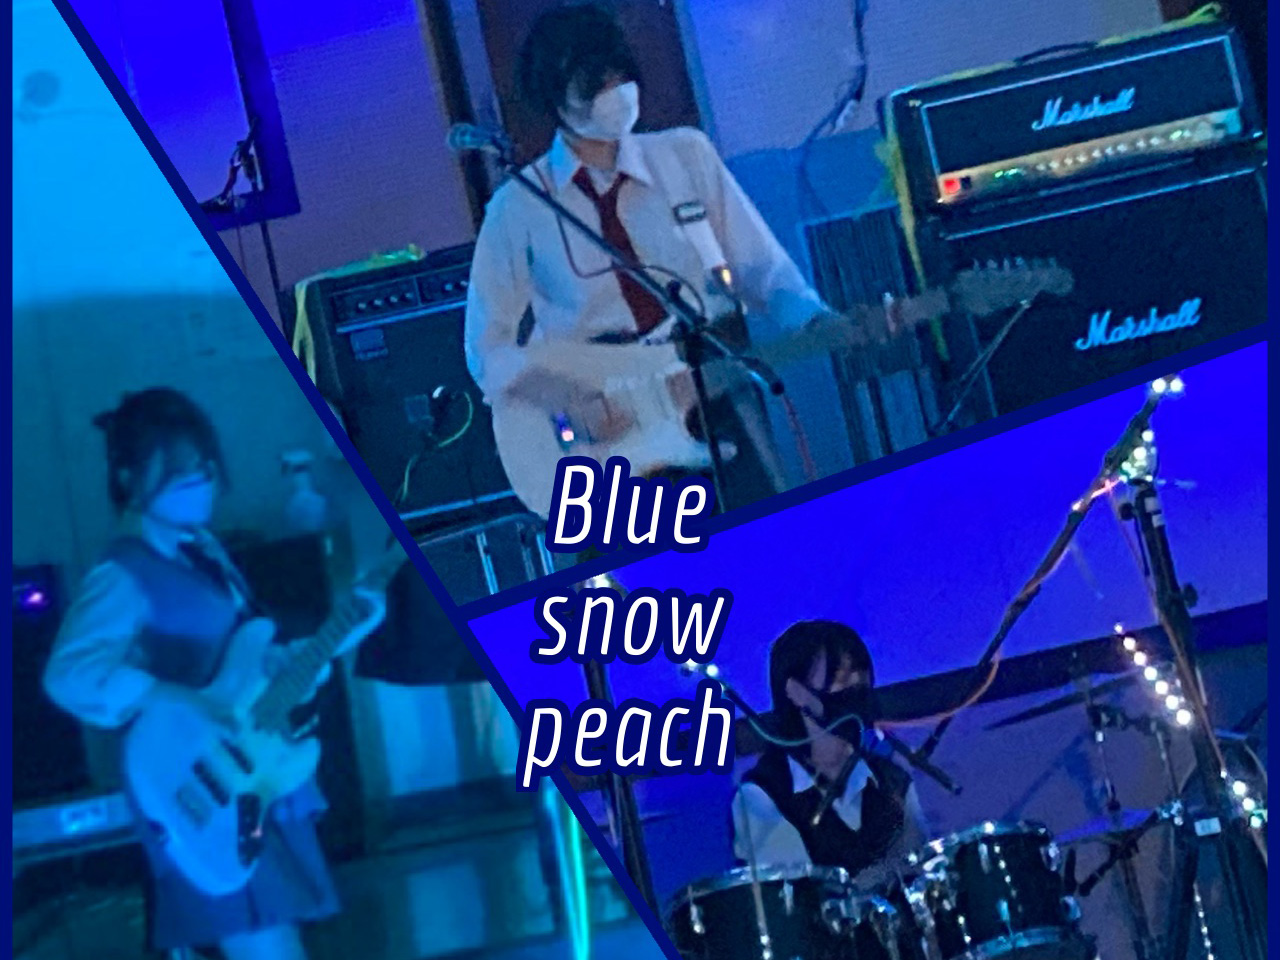 Blue snow peach